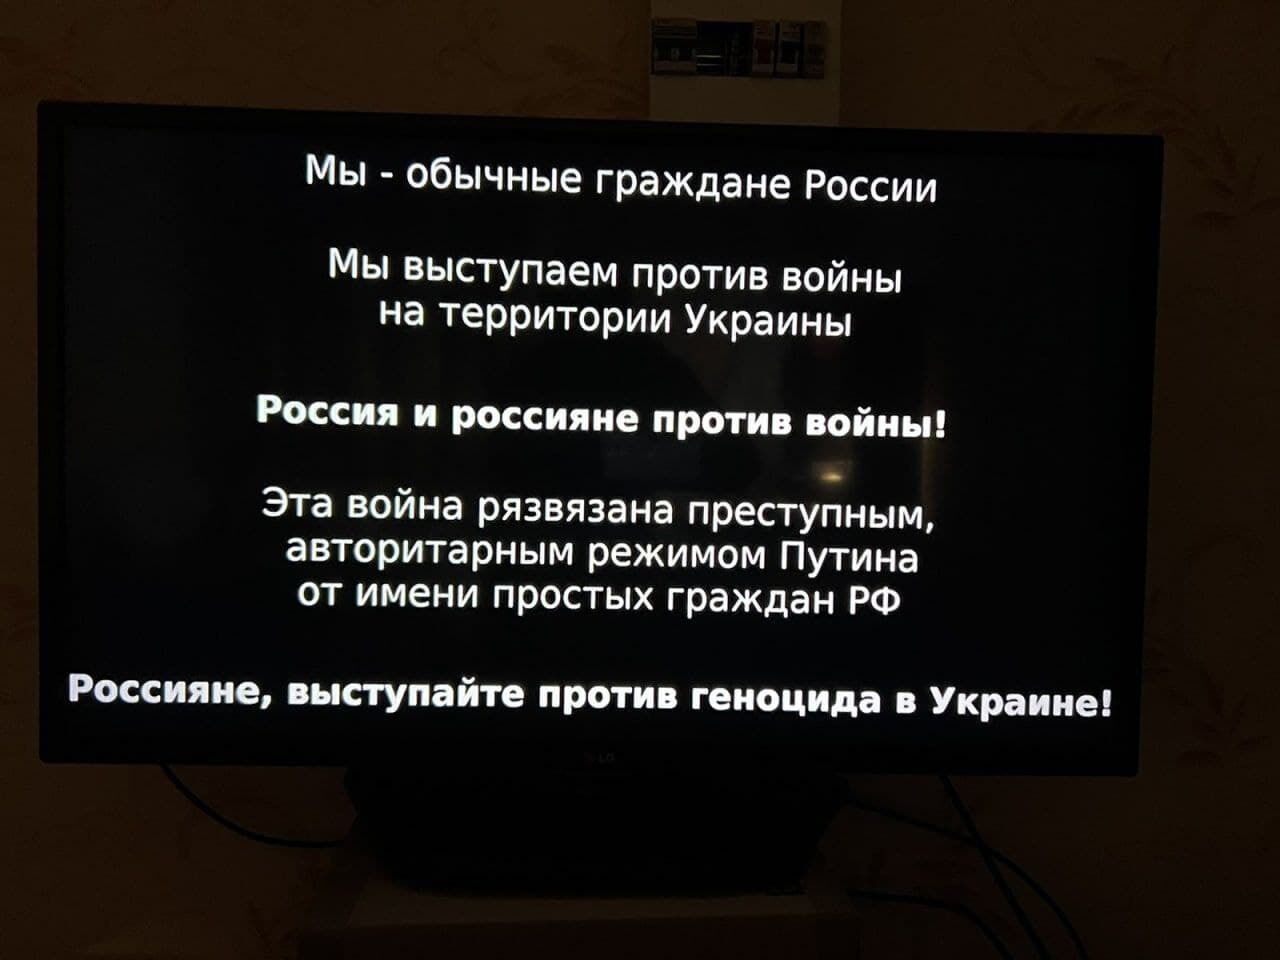 "Эта война развязана преступным режимом": на видеосервисах в РФ начали транслировать антивоенную агитацию. Фото и видео